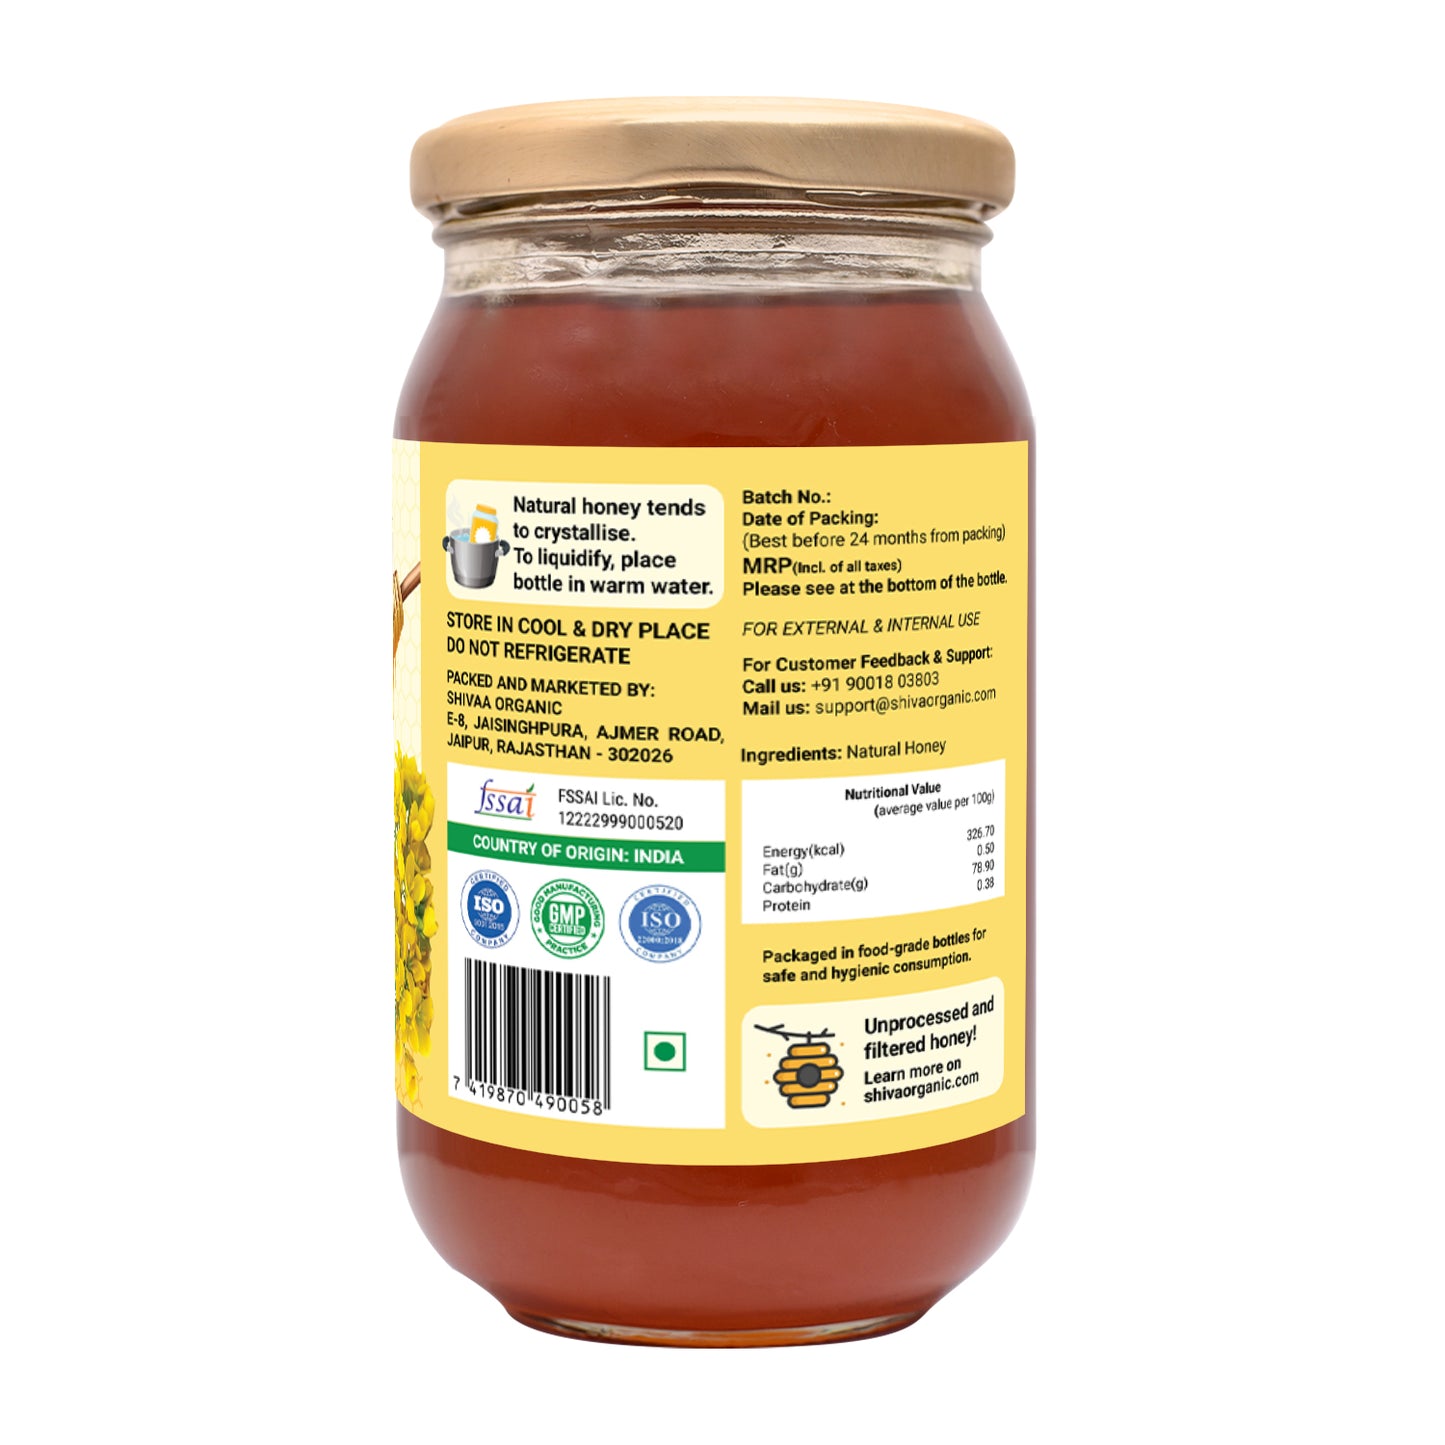 500 gm | Table Honey | White Mustard honey | Shiva Organic